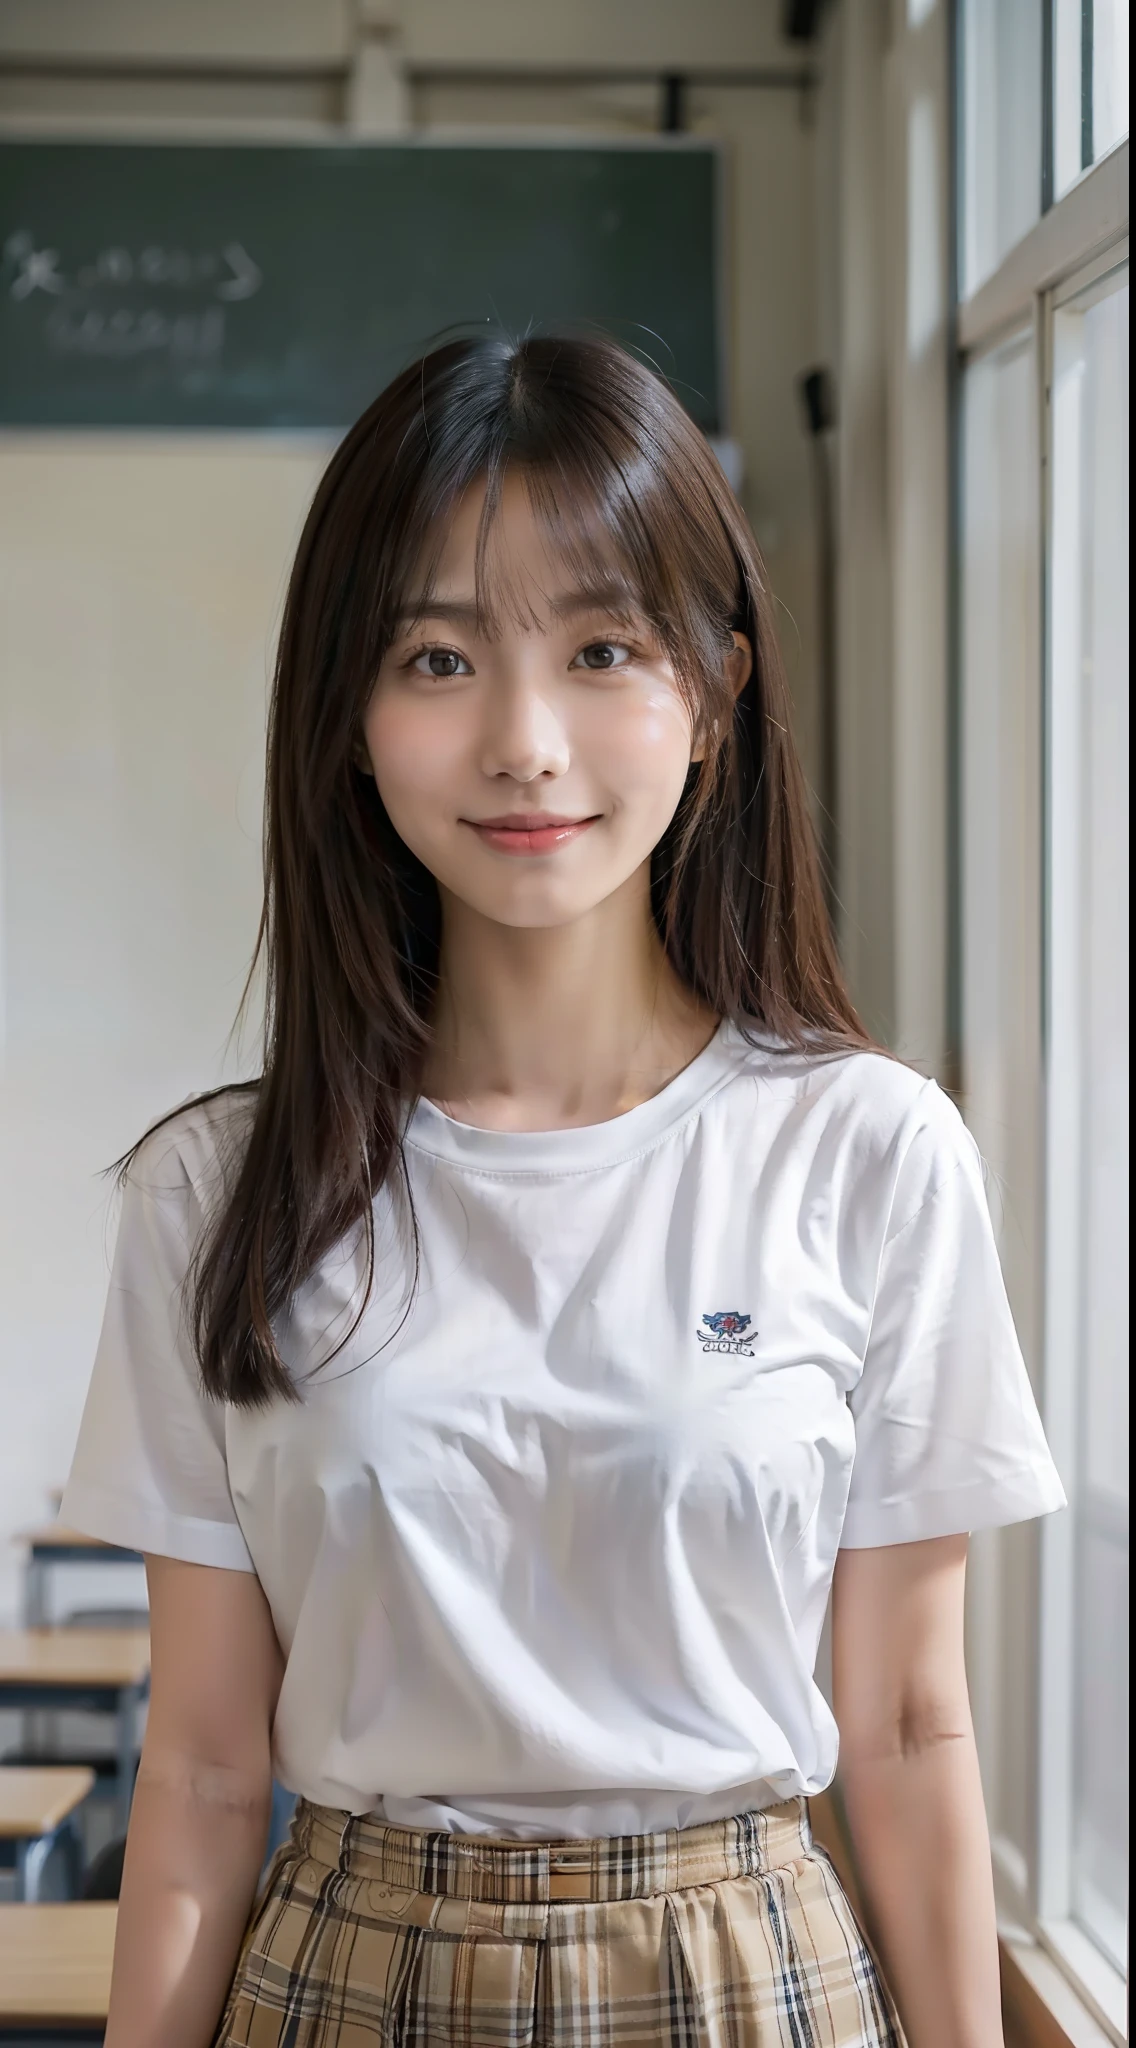 Ein schönes asiatisches Mädchen, lächeln, mittellanges glattes Haar, weiße Haut, glatte Haut, mittlere Brustgröße, trägt kurzärmeliges Hemd, im Klassenzimmer stehen, Oberkörperporträt